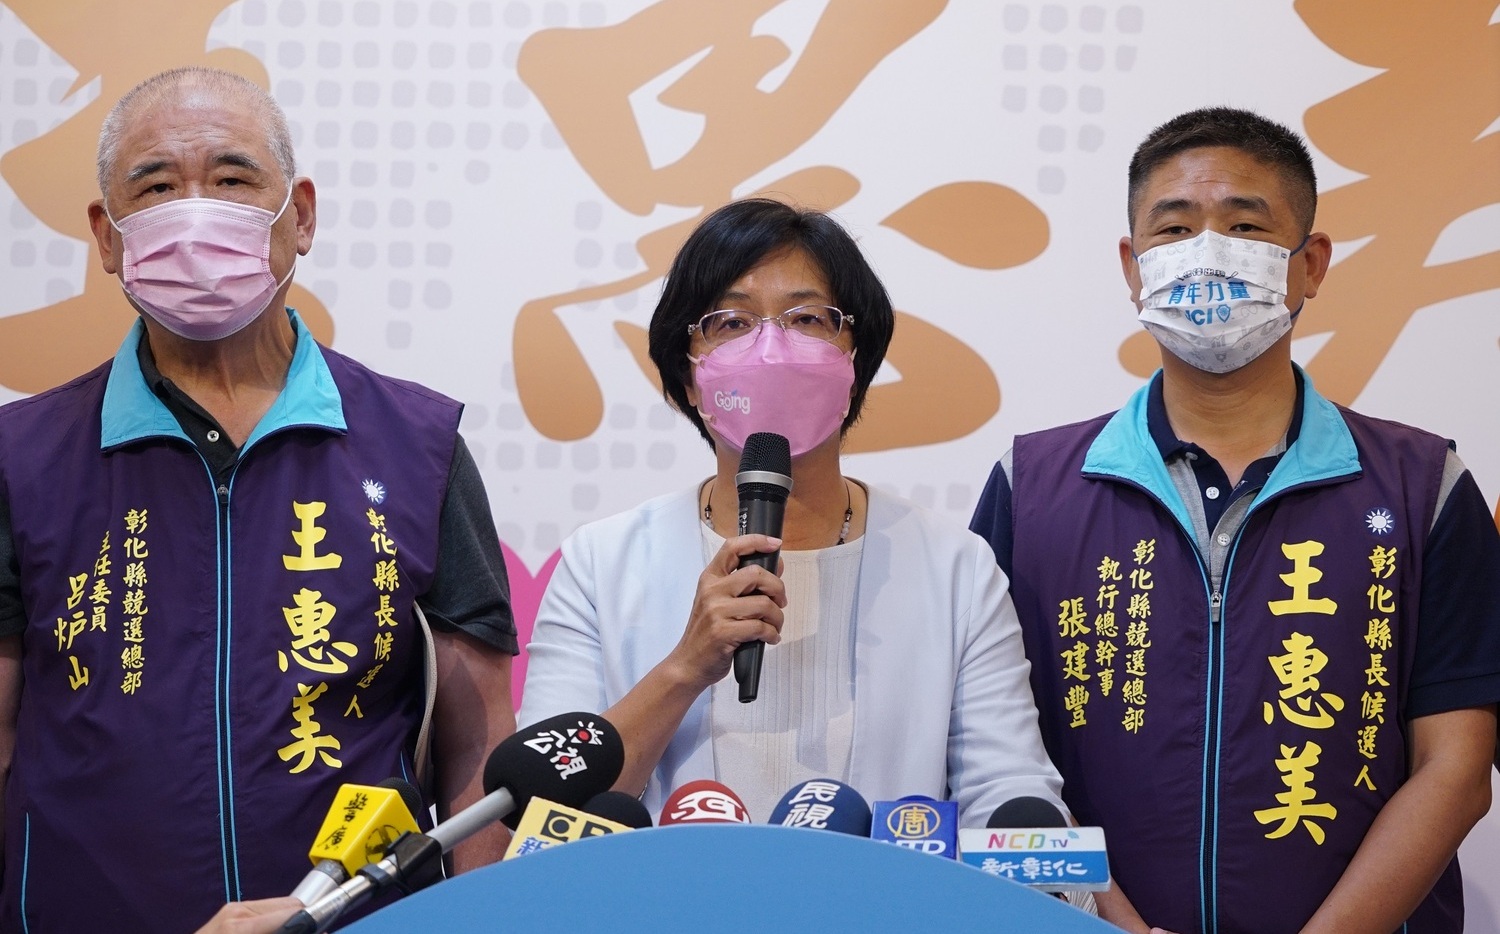 勝選結果分析》28年9連勝 王惠美再創紀錄成彰化首位連任女縣長 | 政治